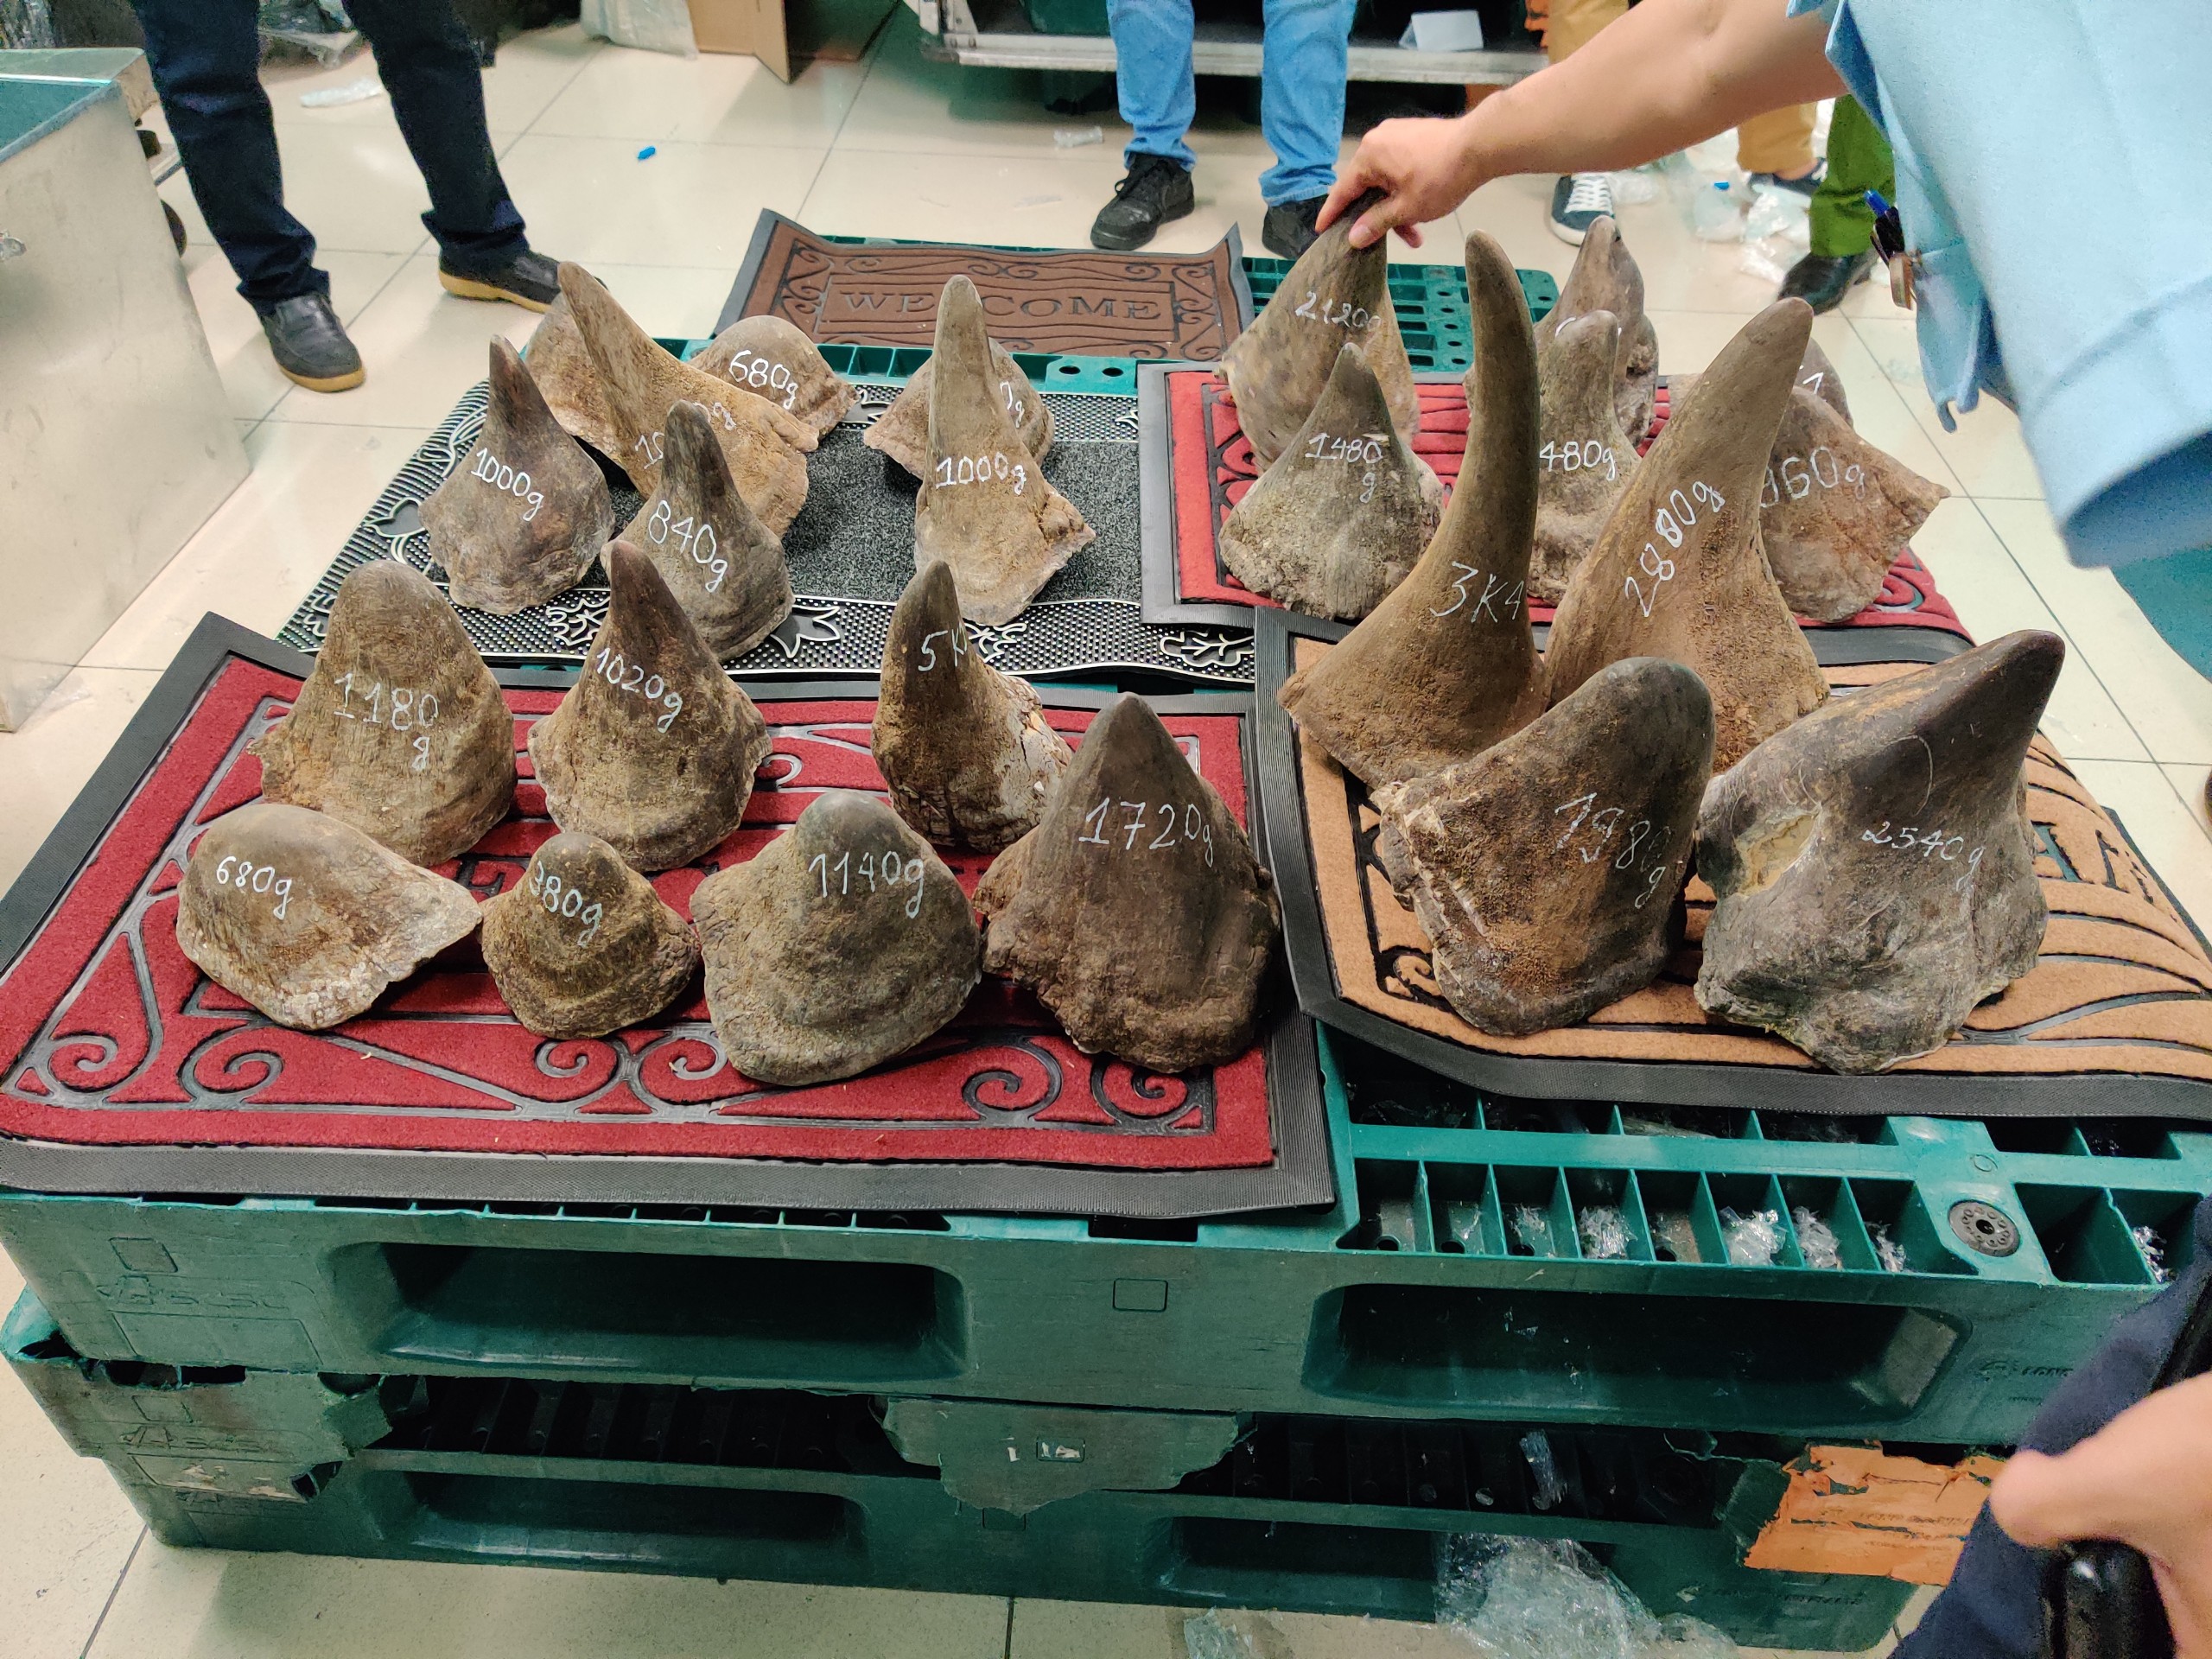 Hé lộ công ty đứng sau gần 100 kg nghi sừng tê giác ở khu vực sân bay Tân Sơn Nhất - Ảnh 3.